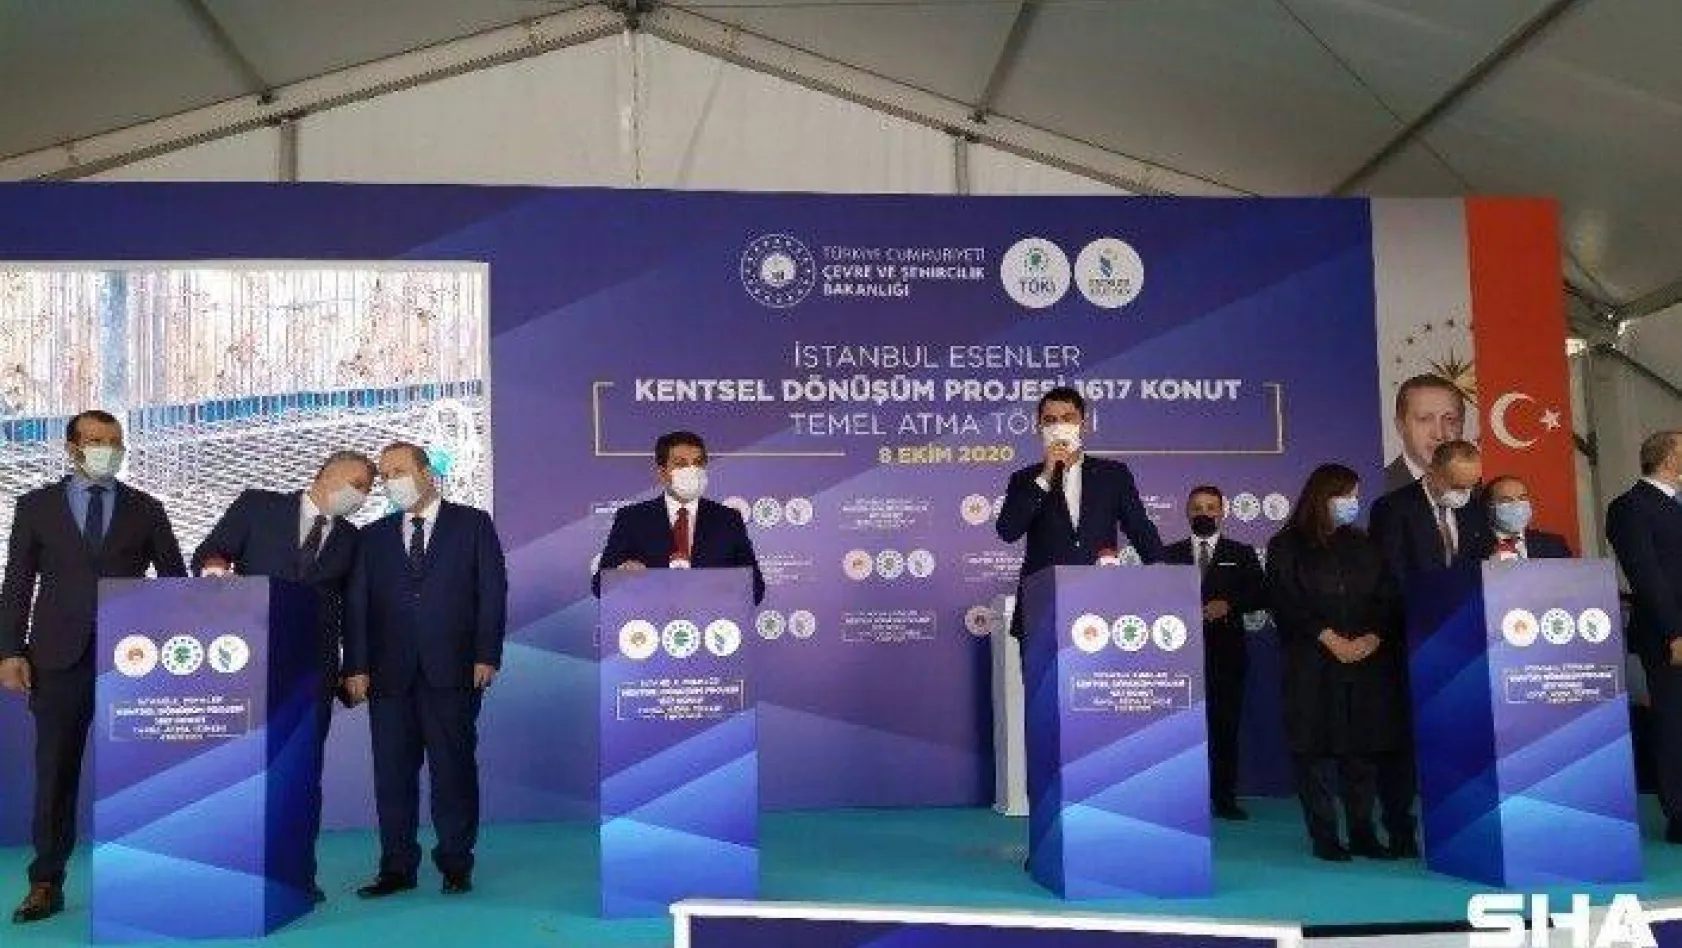 Çevre ve Şehircilik Bakanı Murat Kurum: 'Ülkemizde dönüştürmemiz gereken 1.5 milyon konutumuz var"